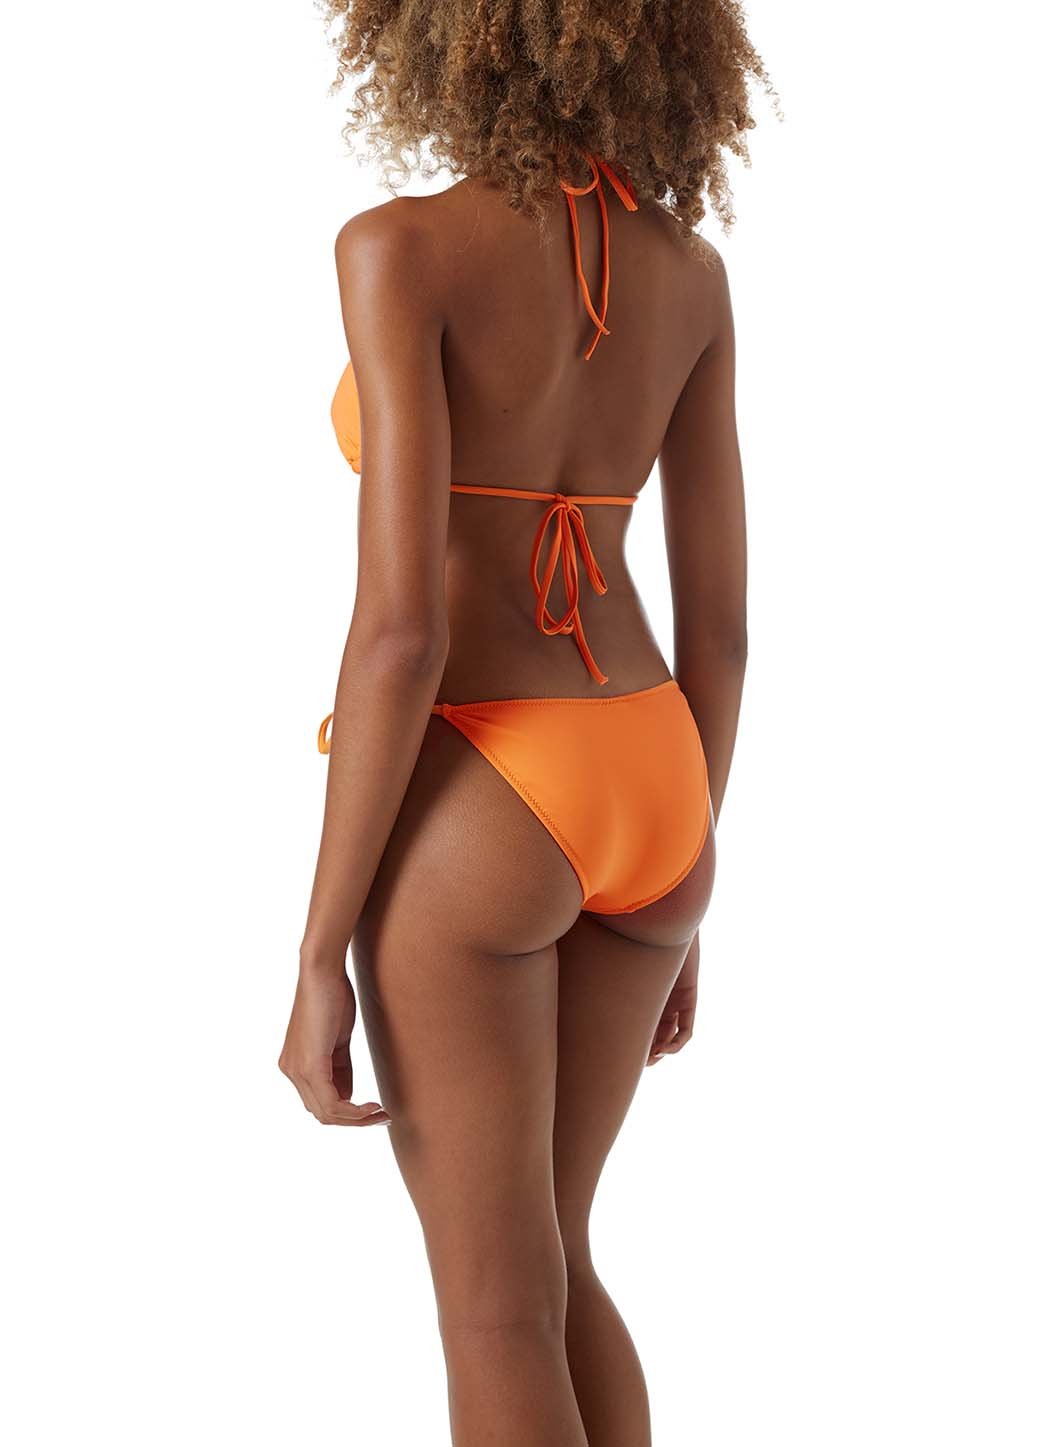 cancun-orange-classic-triangle-bikini+A652